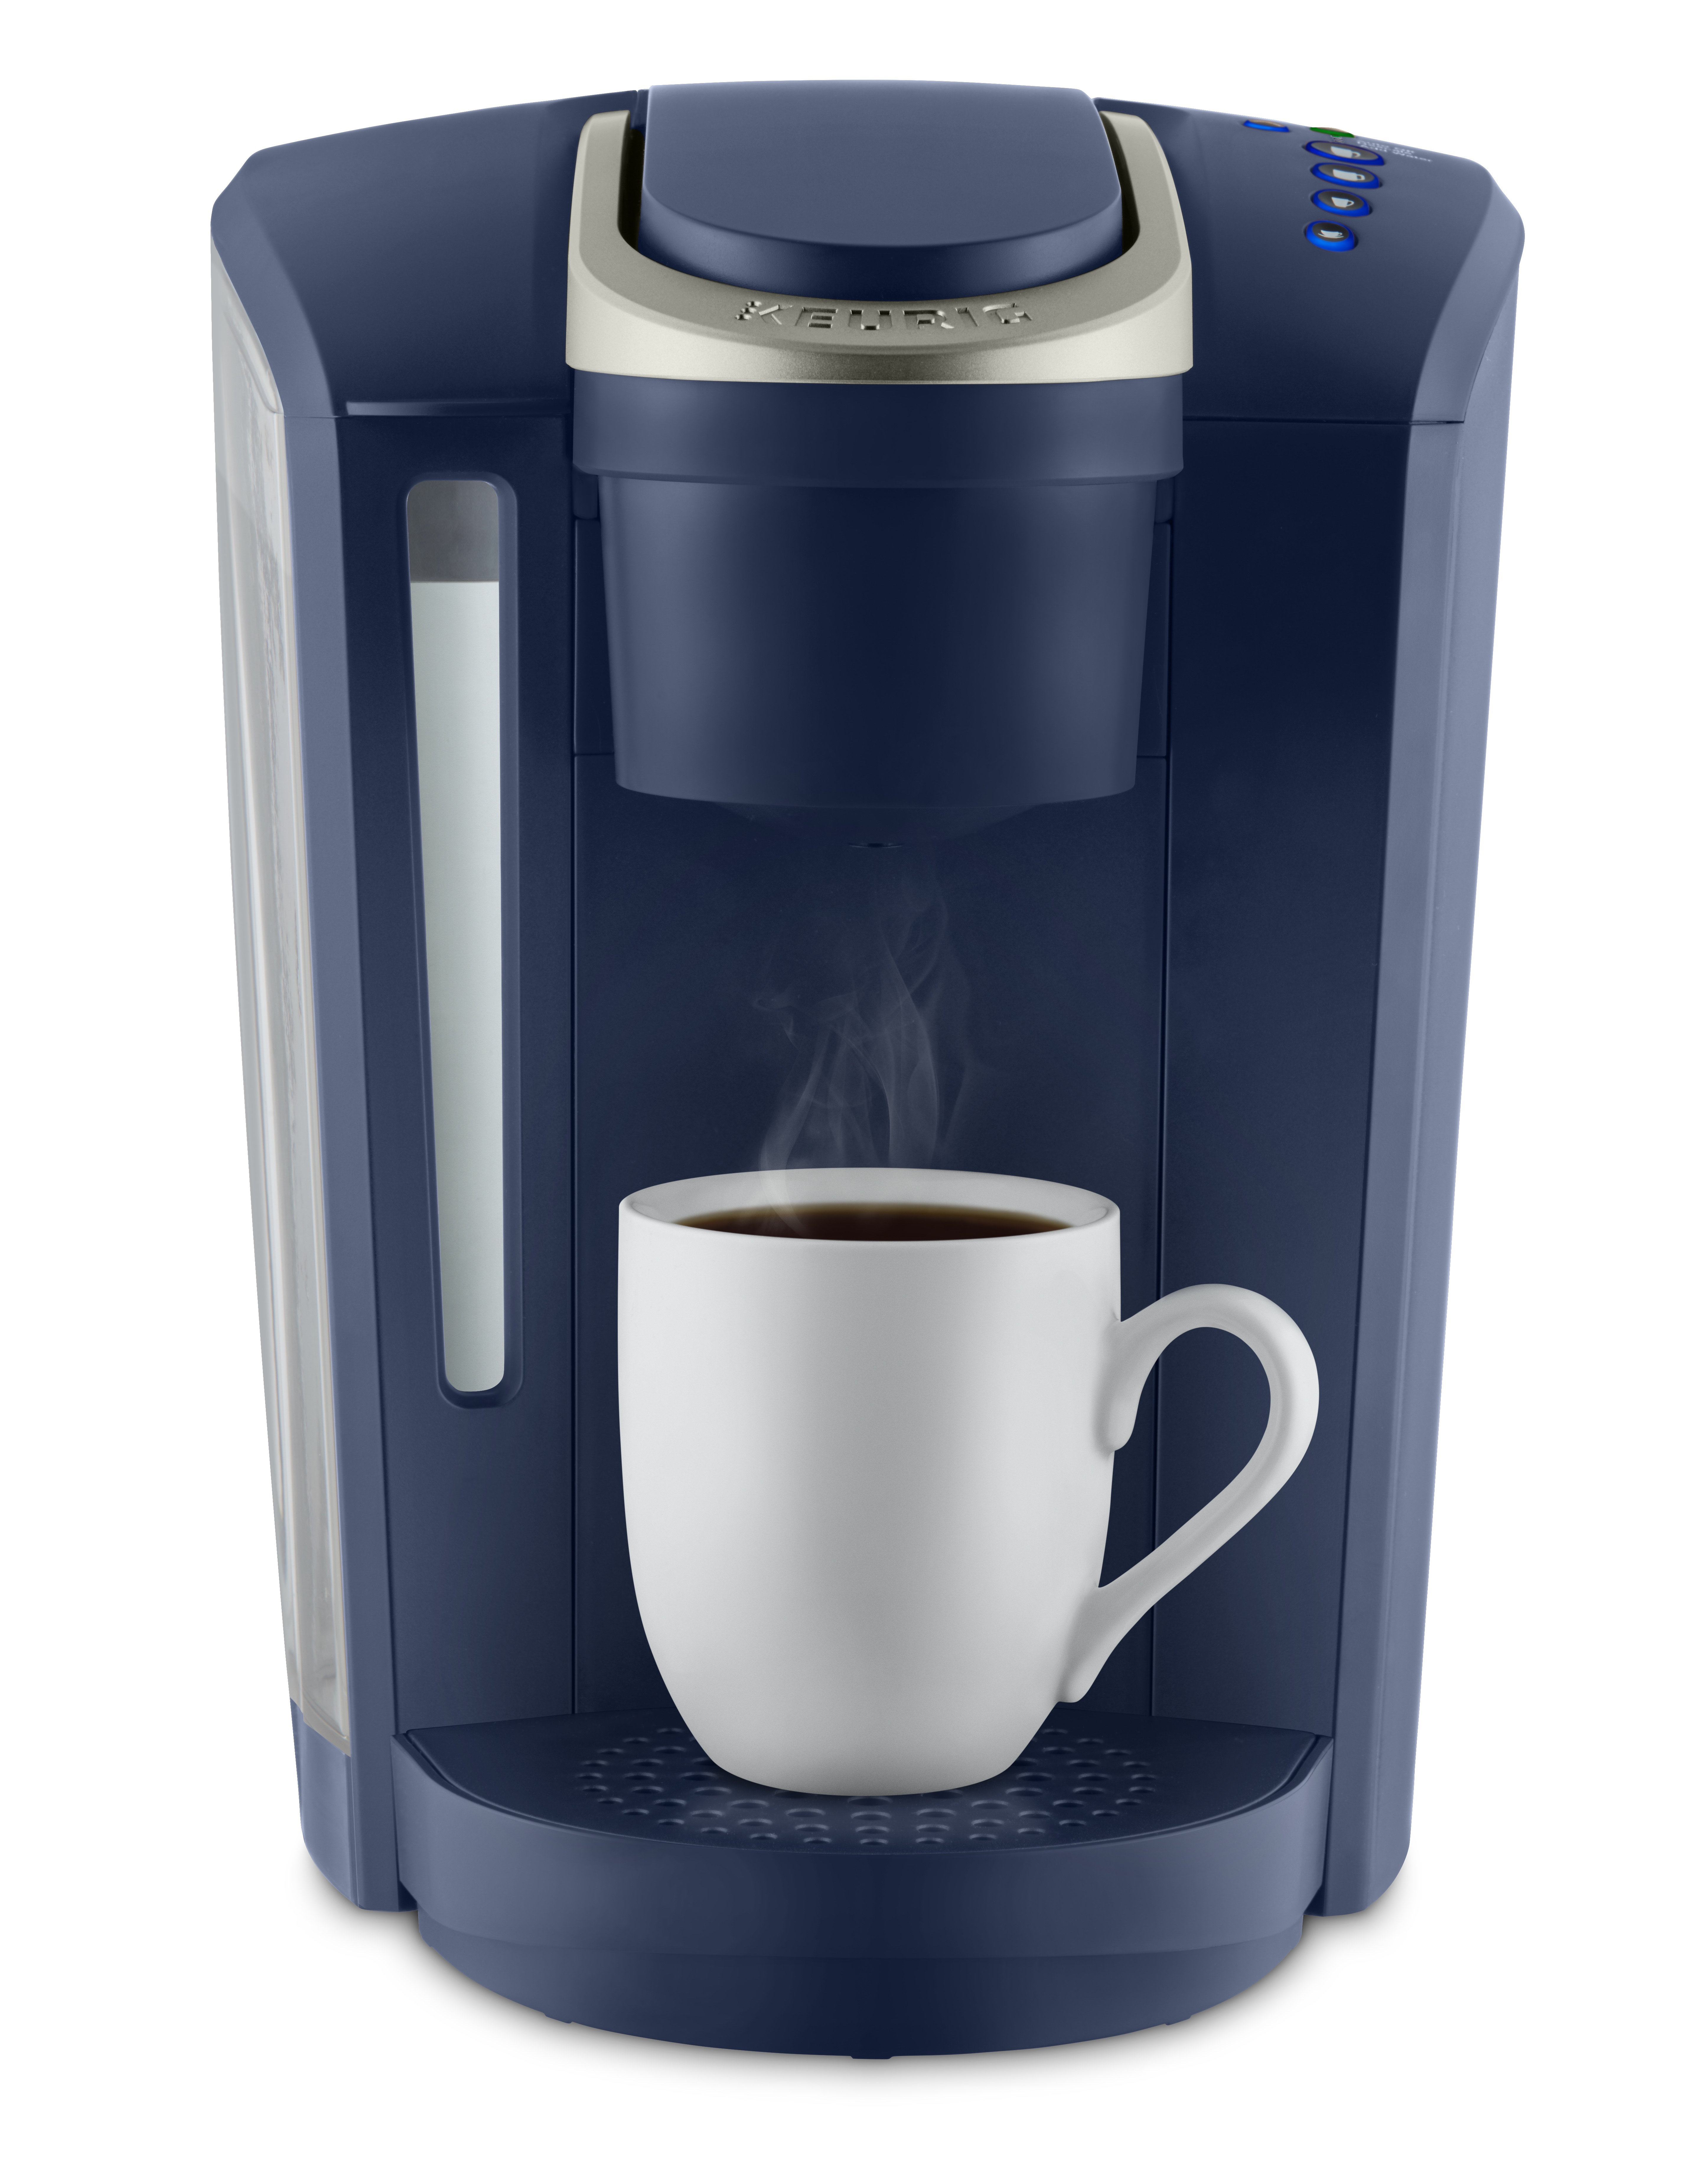 https://assets.wfcdn.com/im/22069655/compr-r85/5853/58537841/keurig-k-select-single-serve-k-cup-pod-coffee-maker.jpg